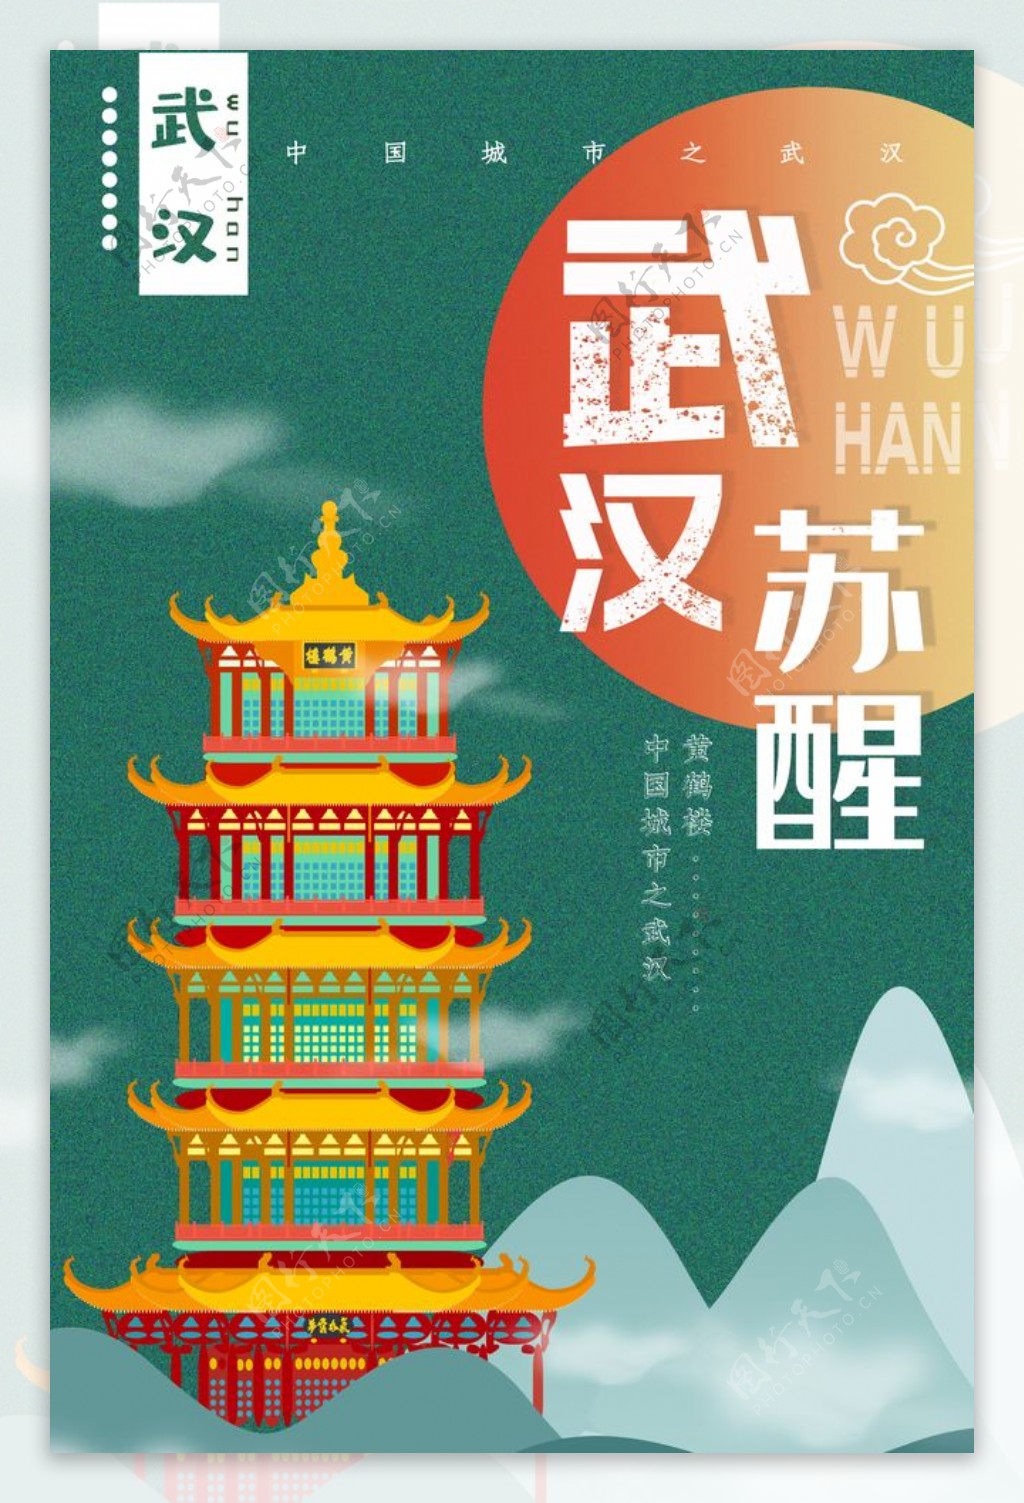 武汉旅游景点景区宣传海报素材